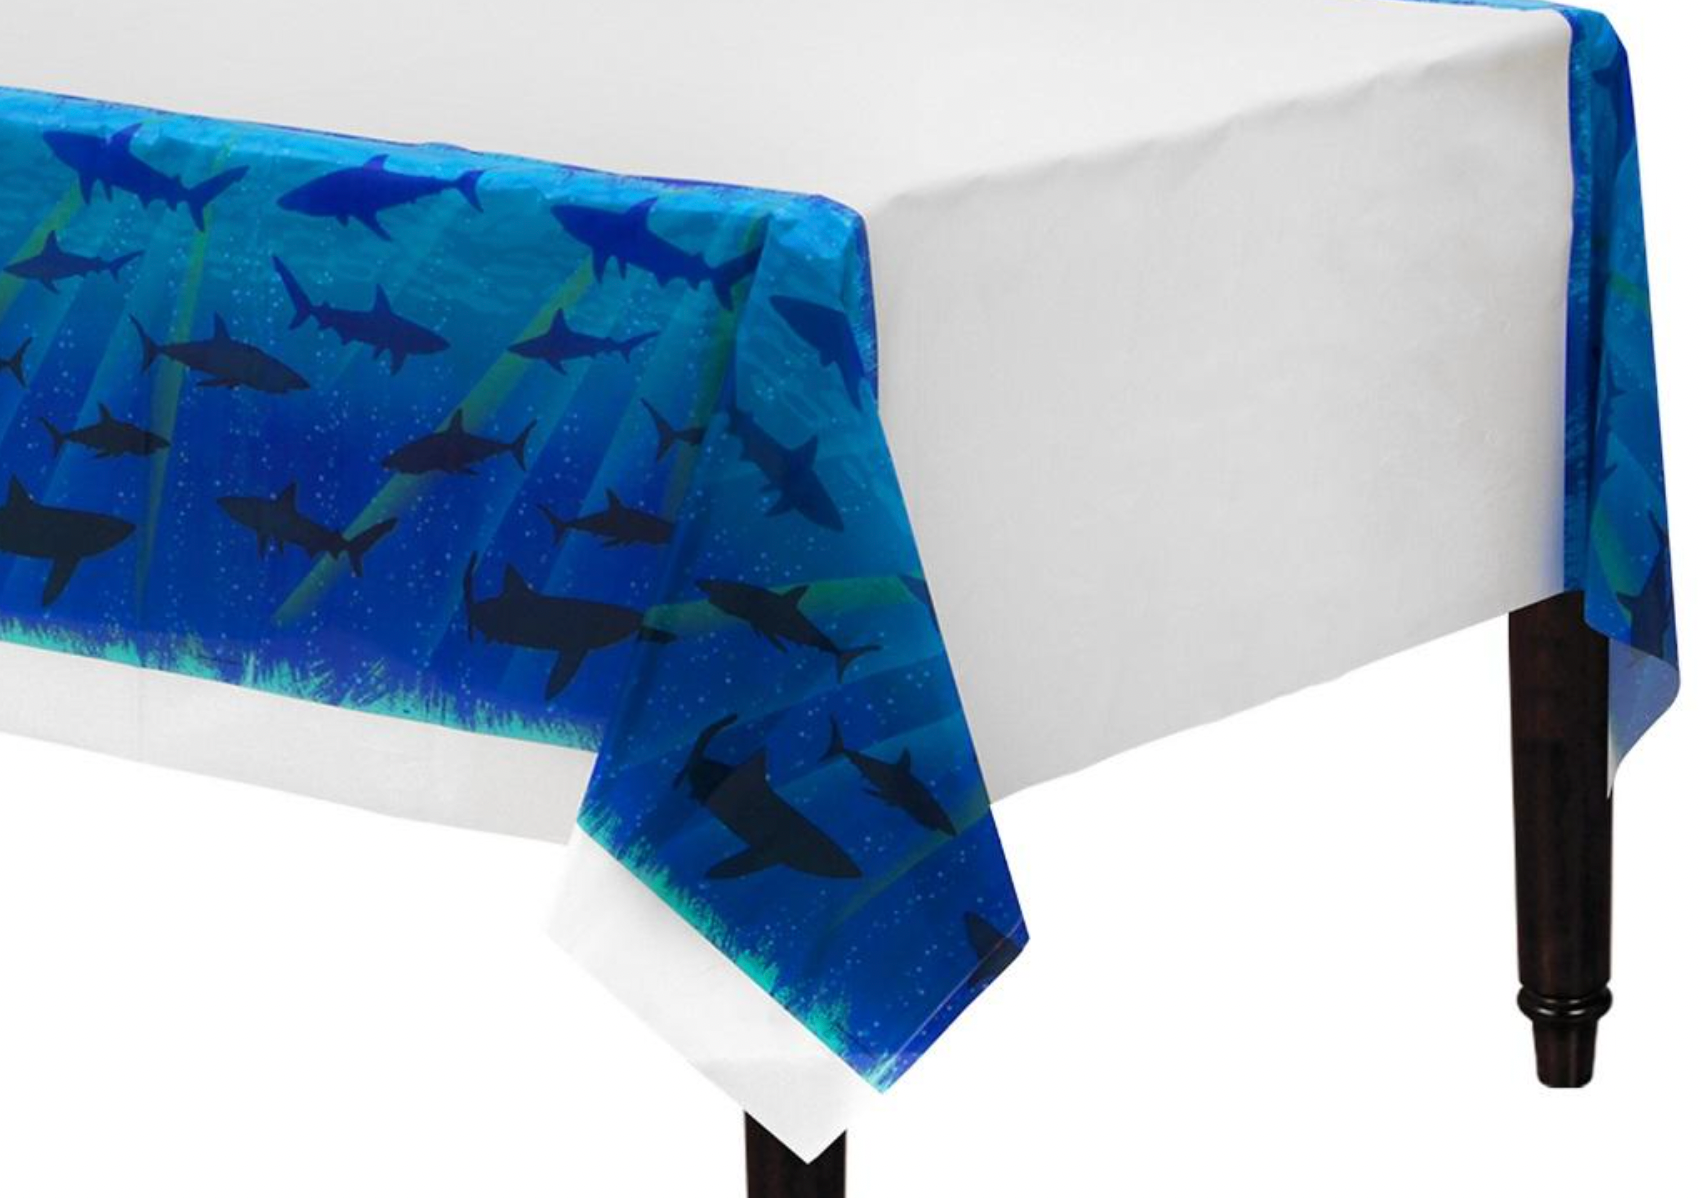 Shark themed table cloth